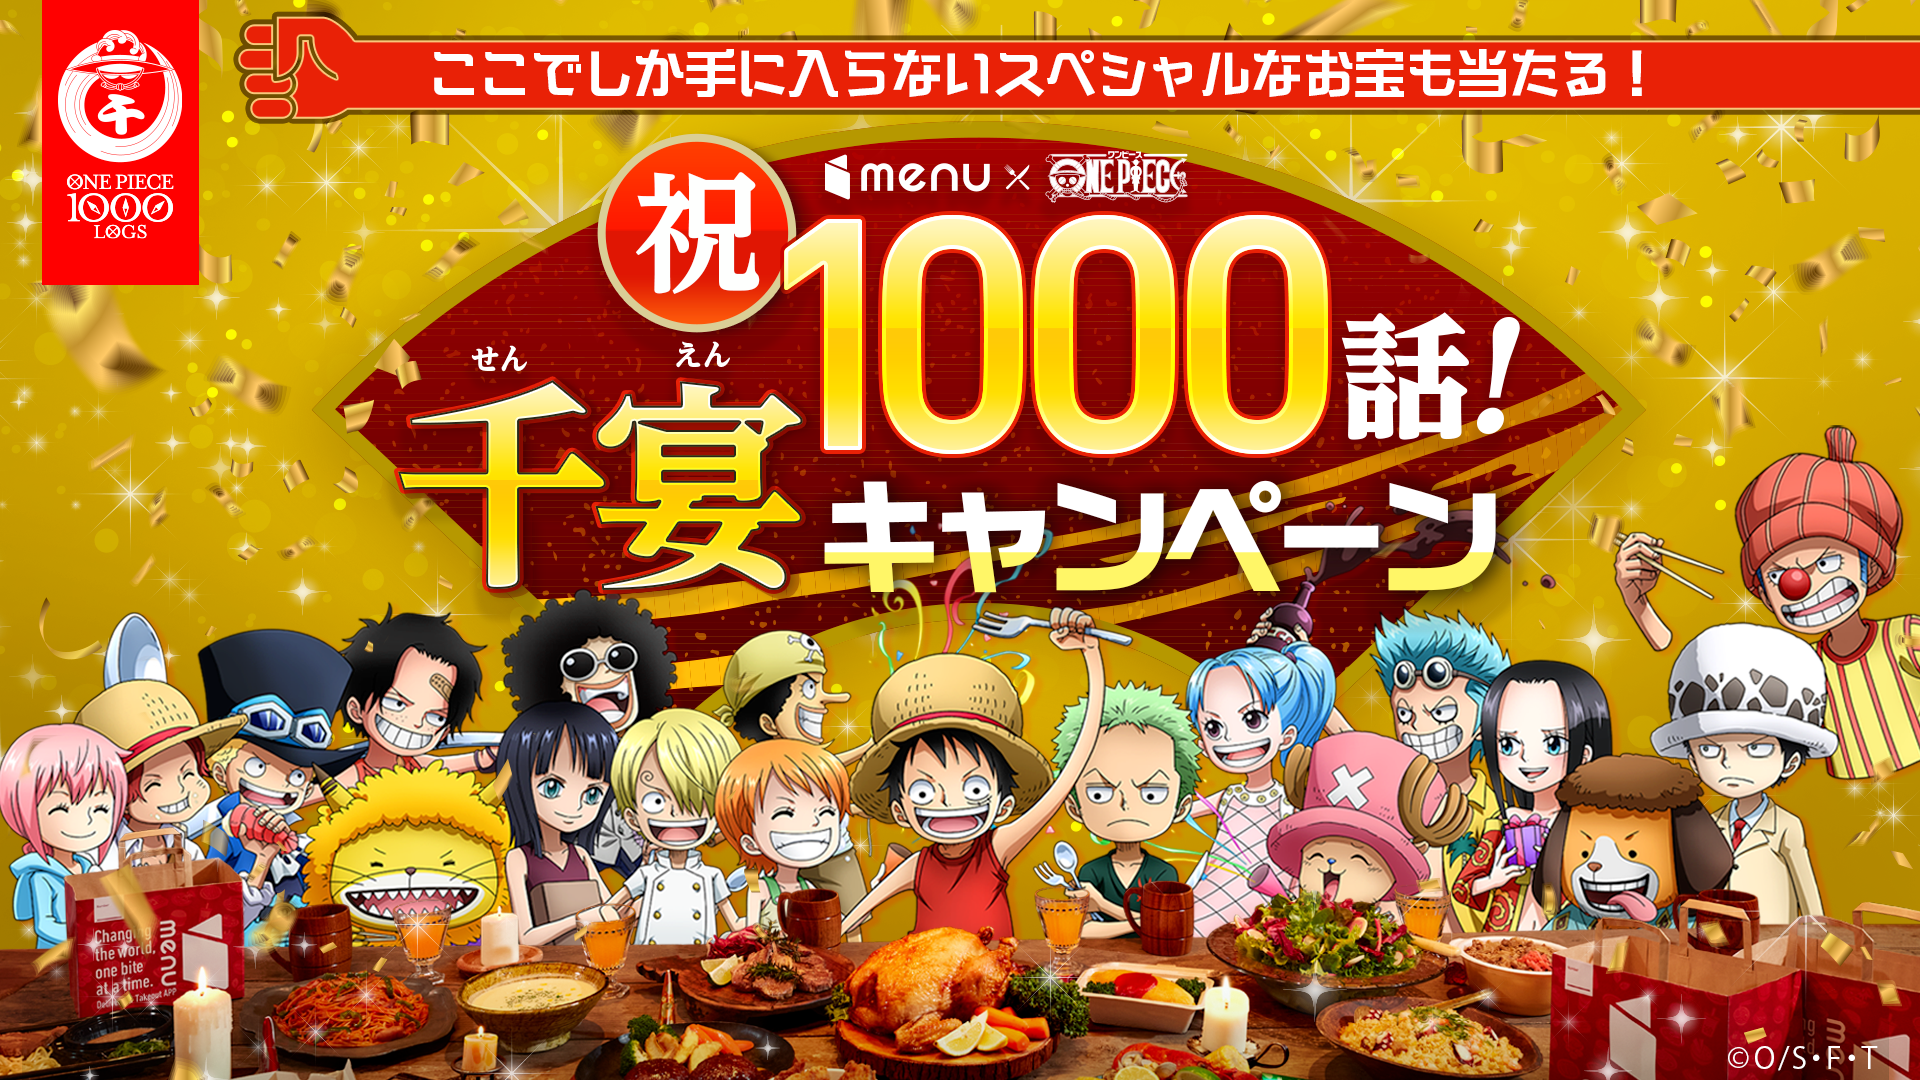 ワンピース シールアニメ1000話記念 ビジュアル  menu